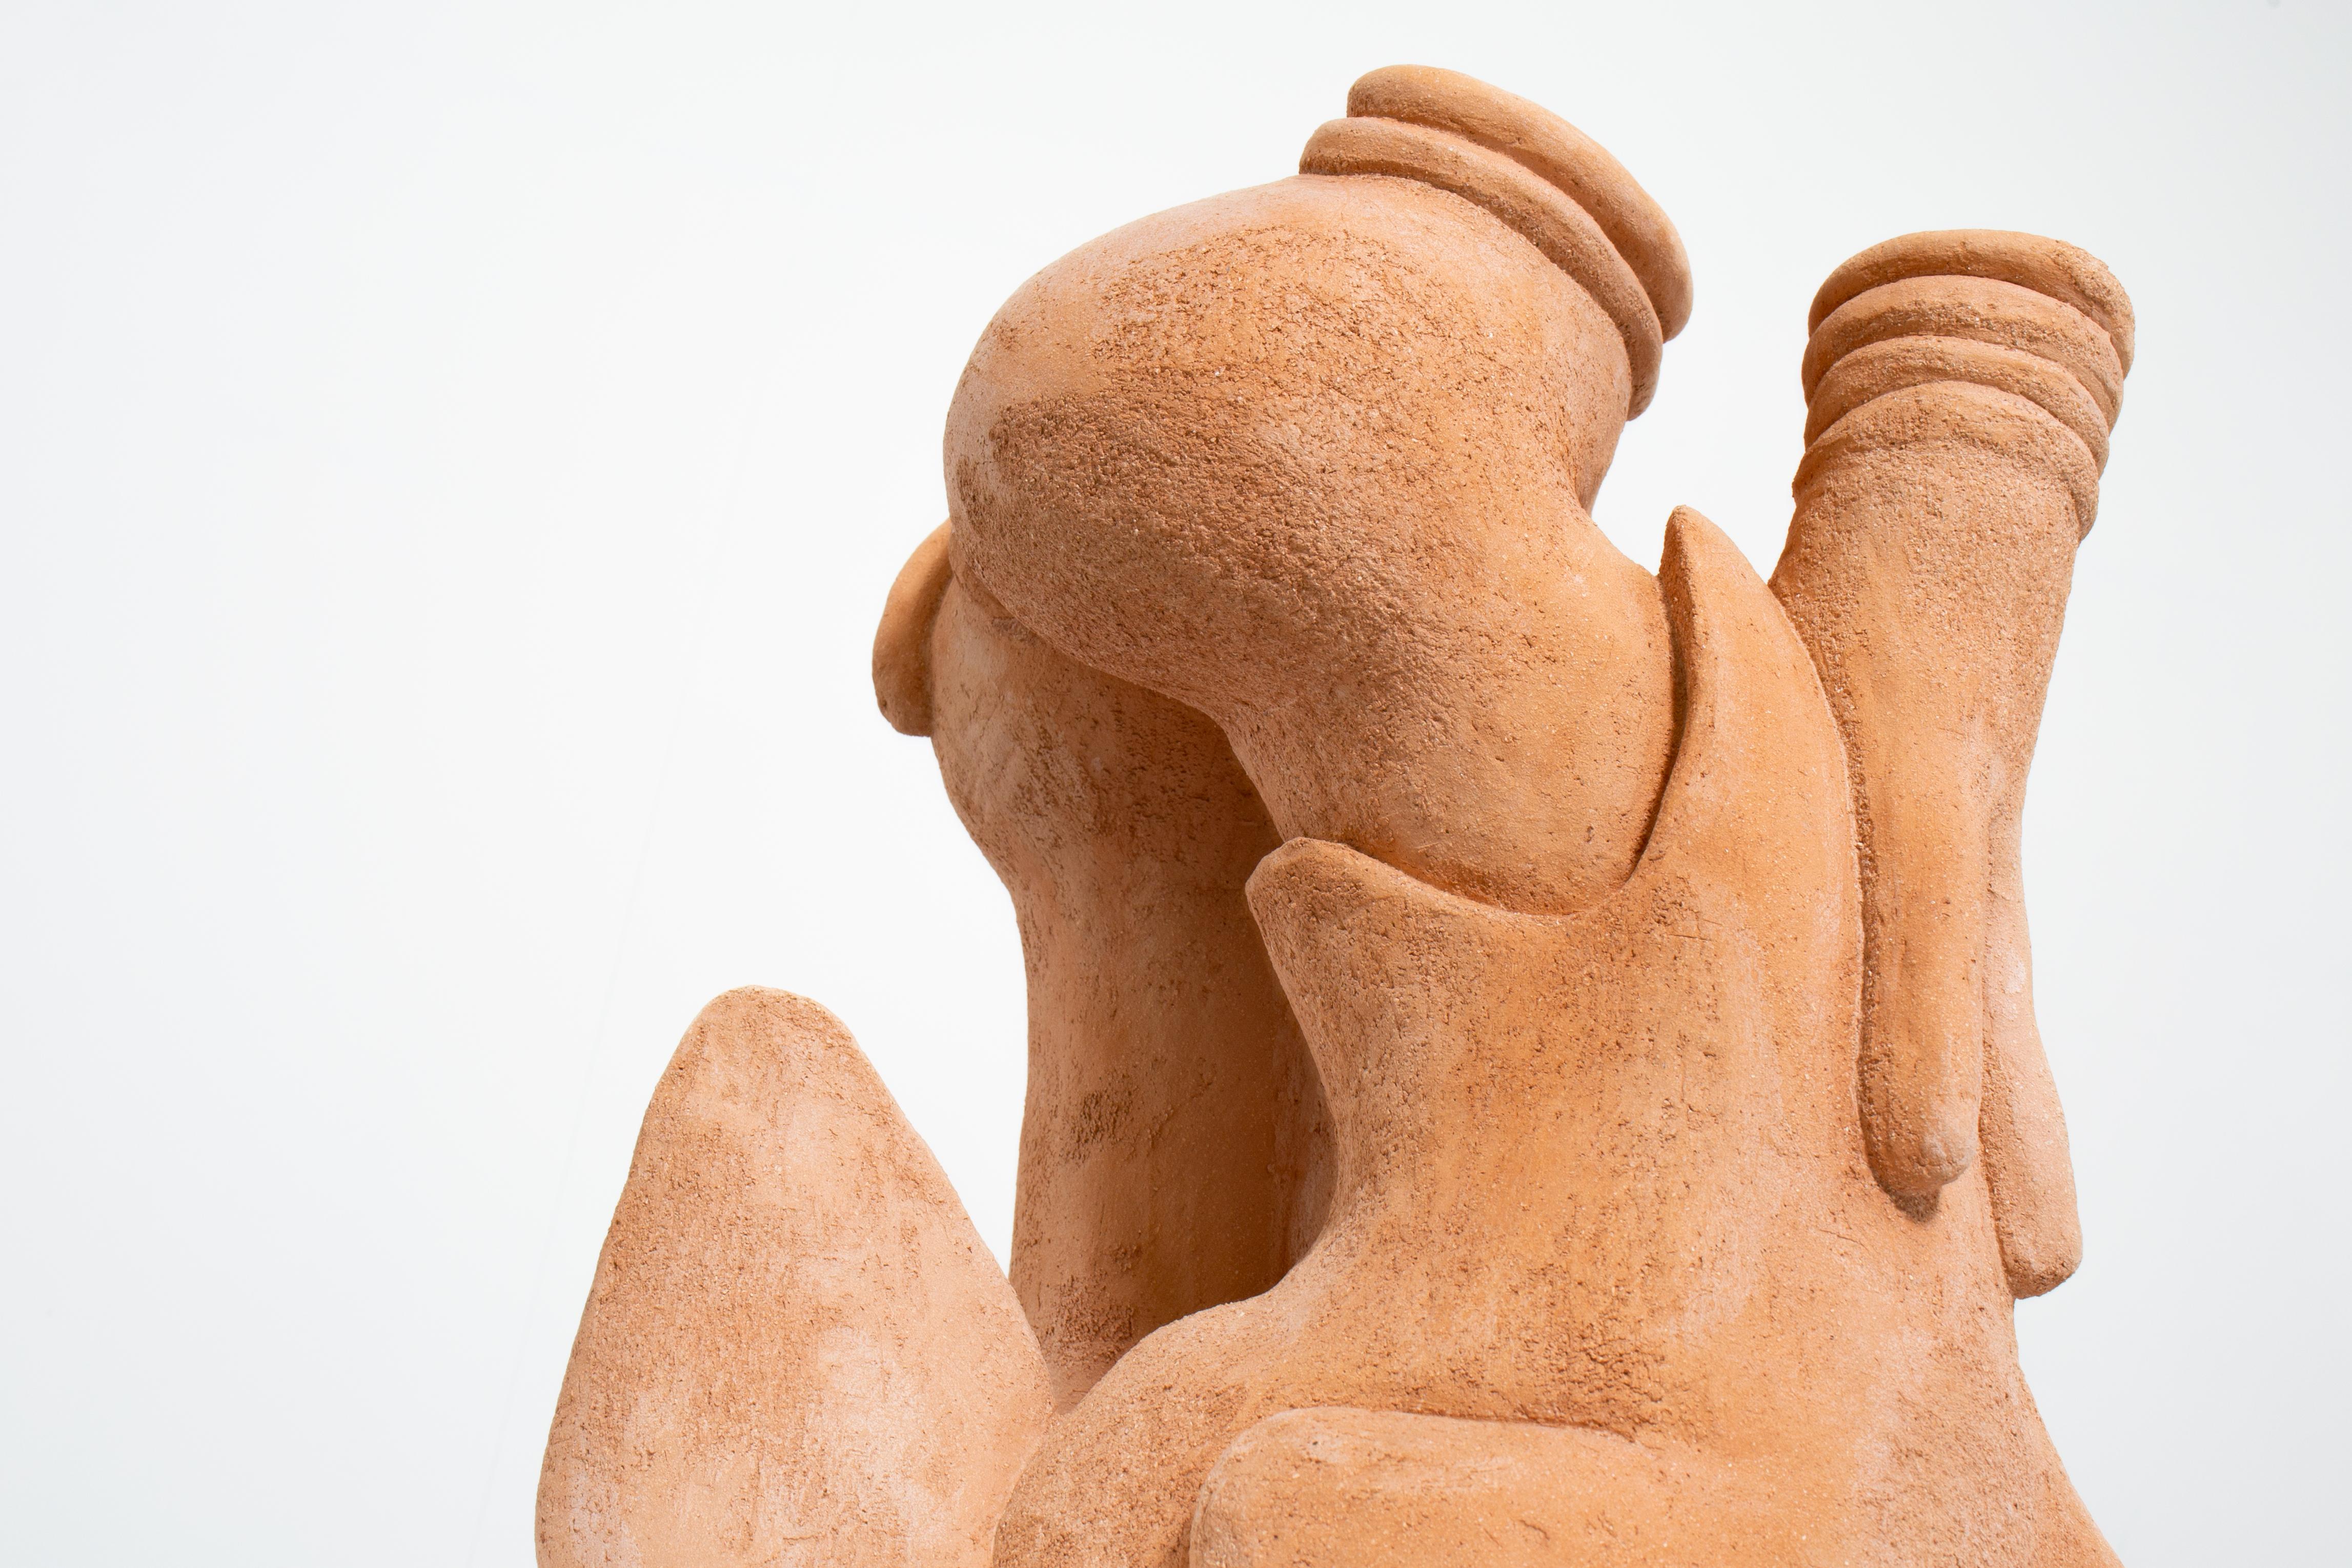 "Du hast deinen Fuß in meinen Lebensraum gesetzt" Keramik-Skulptur von Hvidsten